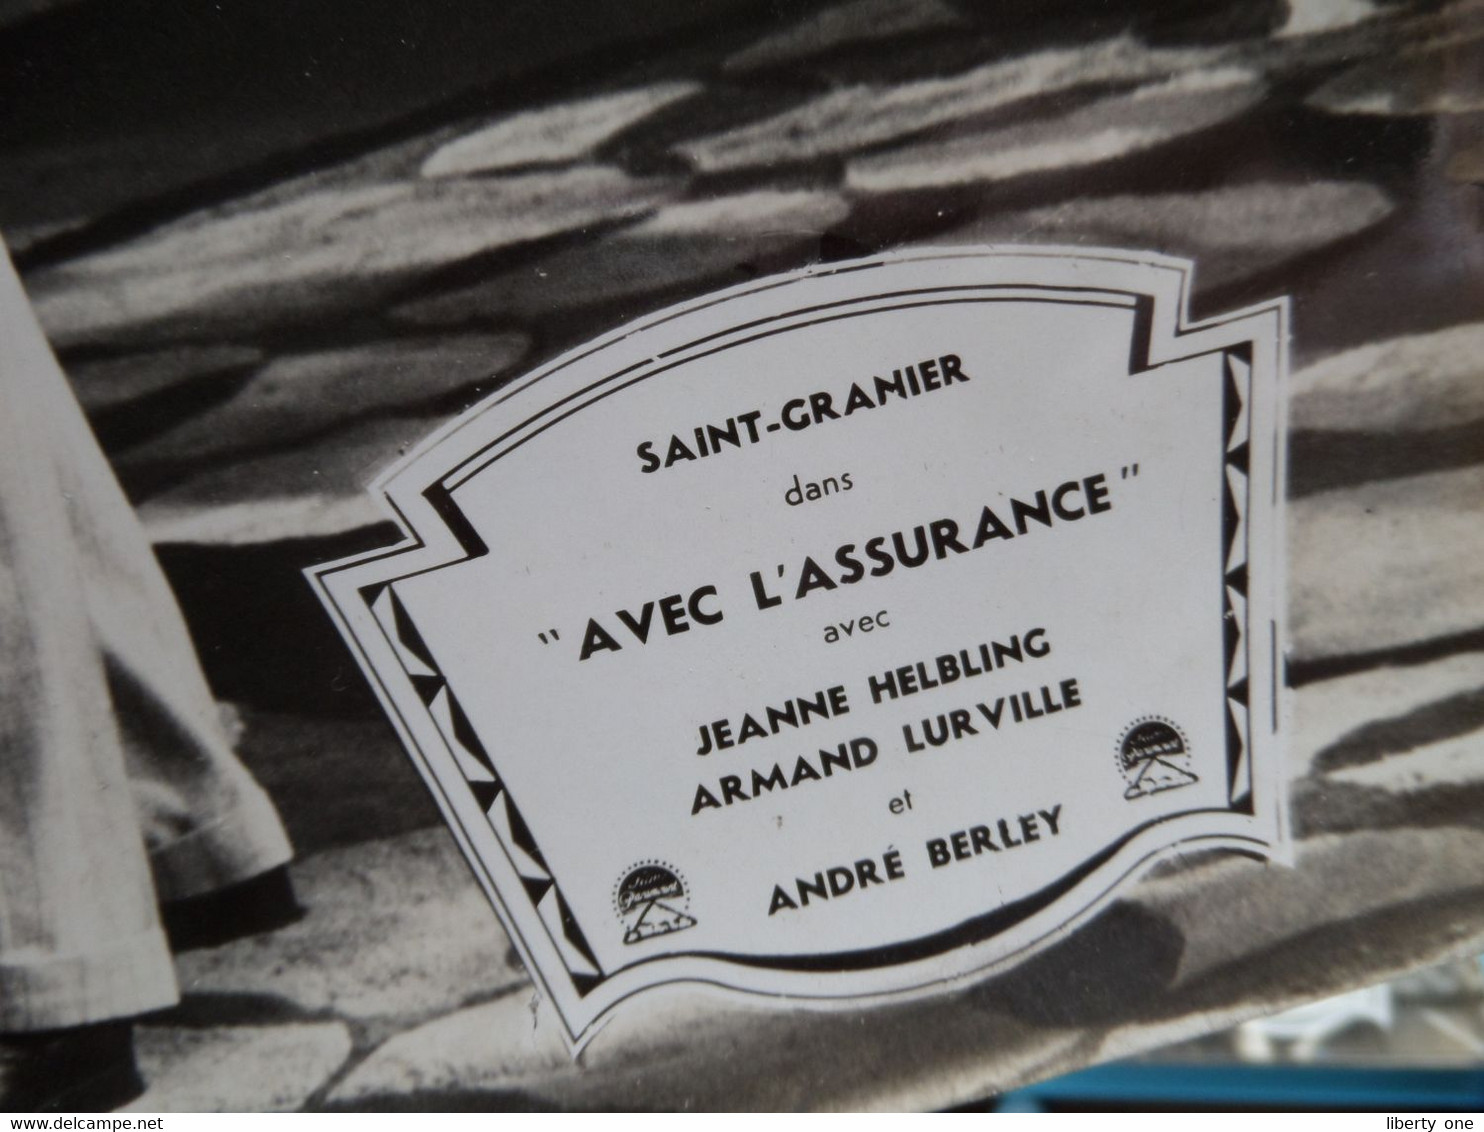 Saint-Granier Dans " AVEC L'ASSURANCE " Jeanne Helbling, Armand Lurville Et André Berley ( Photo Size 30 X 45 Cm.)! - Photographs